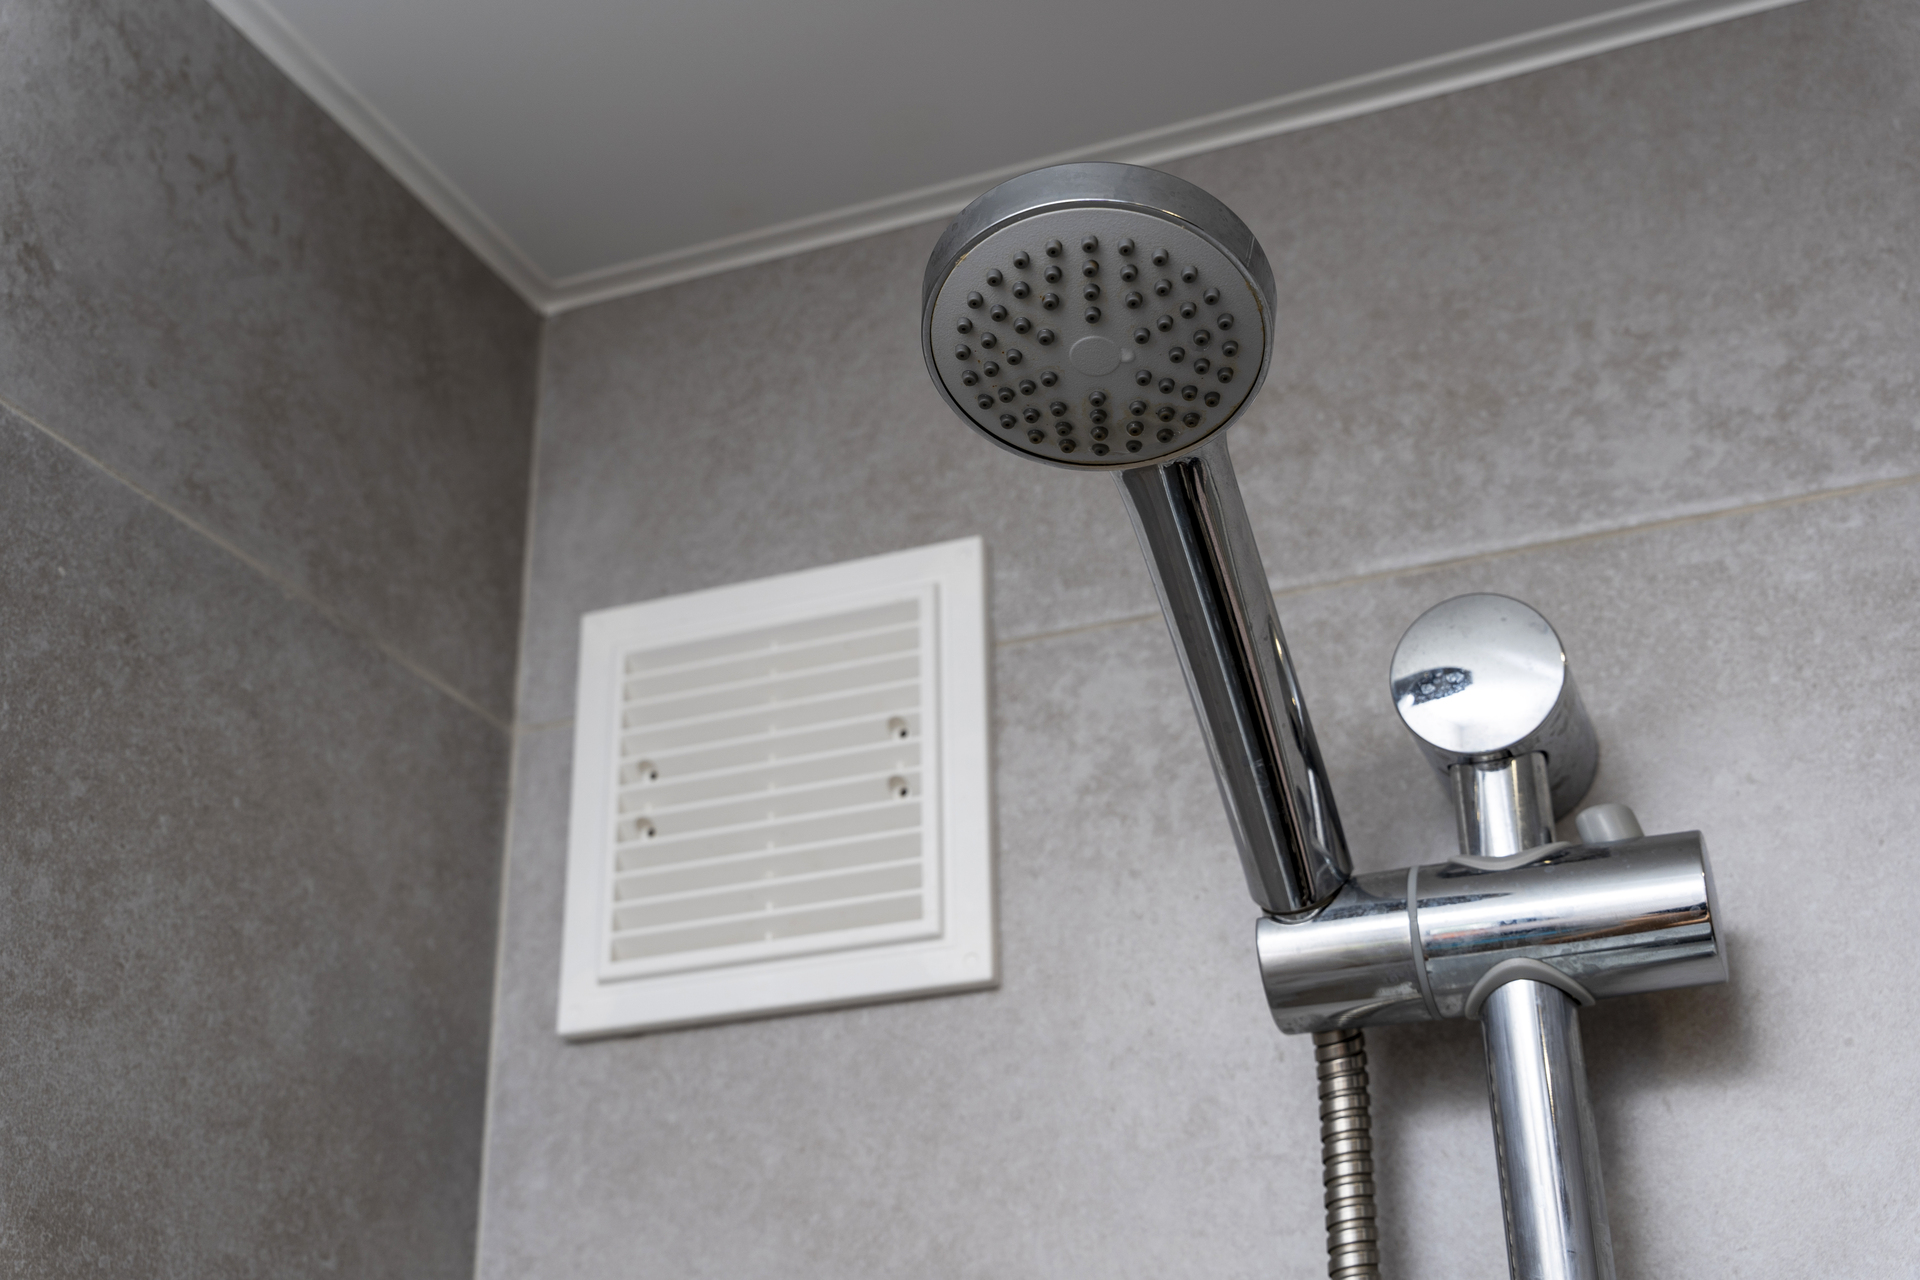 Na obrazku widoczny jest wentylator umieszczony nad prysznicem w łazience, zapewniający skuteczną eliminację pary wodnej i wilgoci. Jego precyzyjne umiejscowienie pozwala na skuteczne odprowadzanie powstałej pary, co pomaga utrzymać środowisko łazienki suche i świeże. Ten obrazek ukazuje praktyczne zastosowanie wentylatora w łazience, dbając o zapobieganie powstawaniu pleśni i utrzymanie optymalnej kondycji pomieszczenia